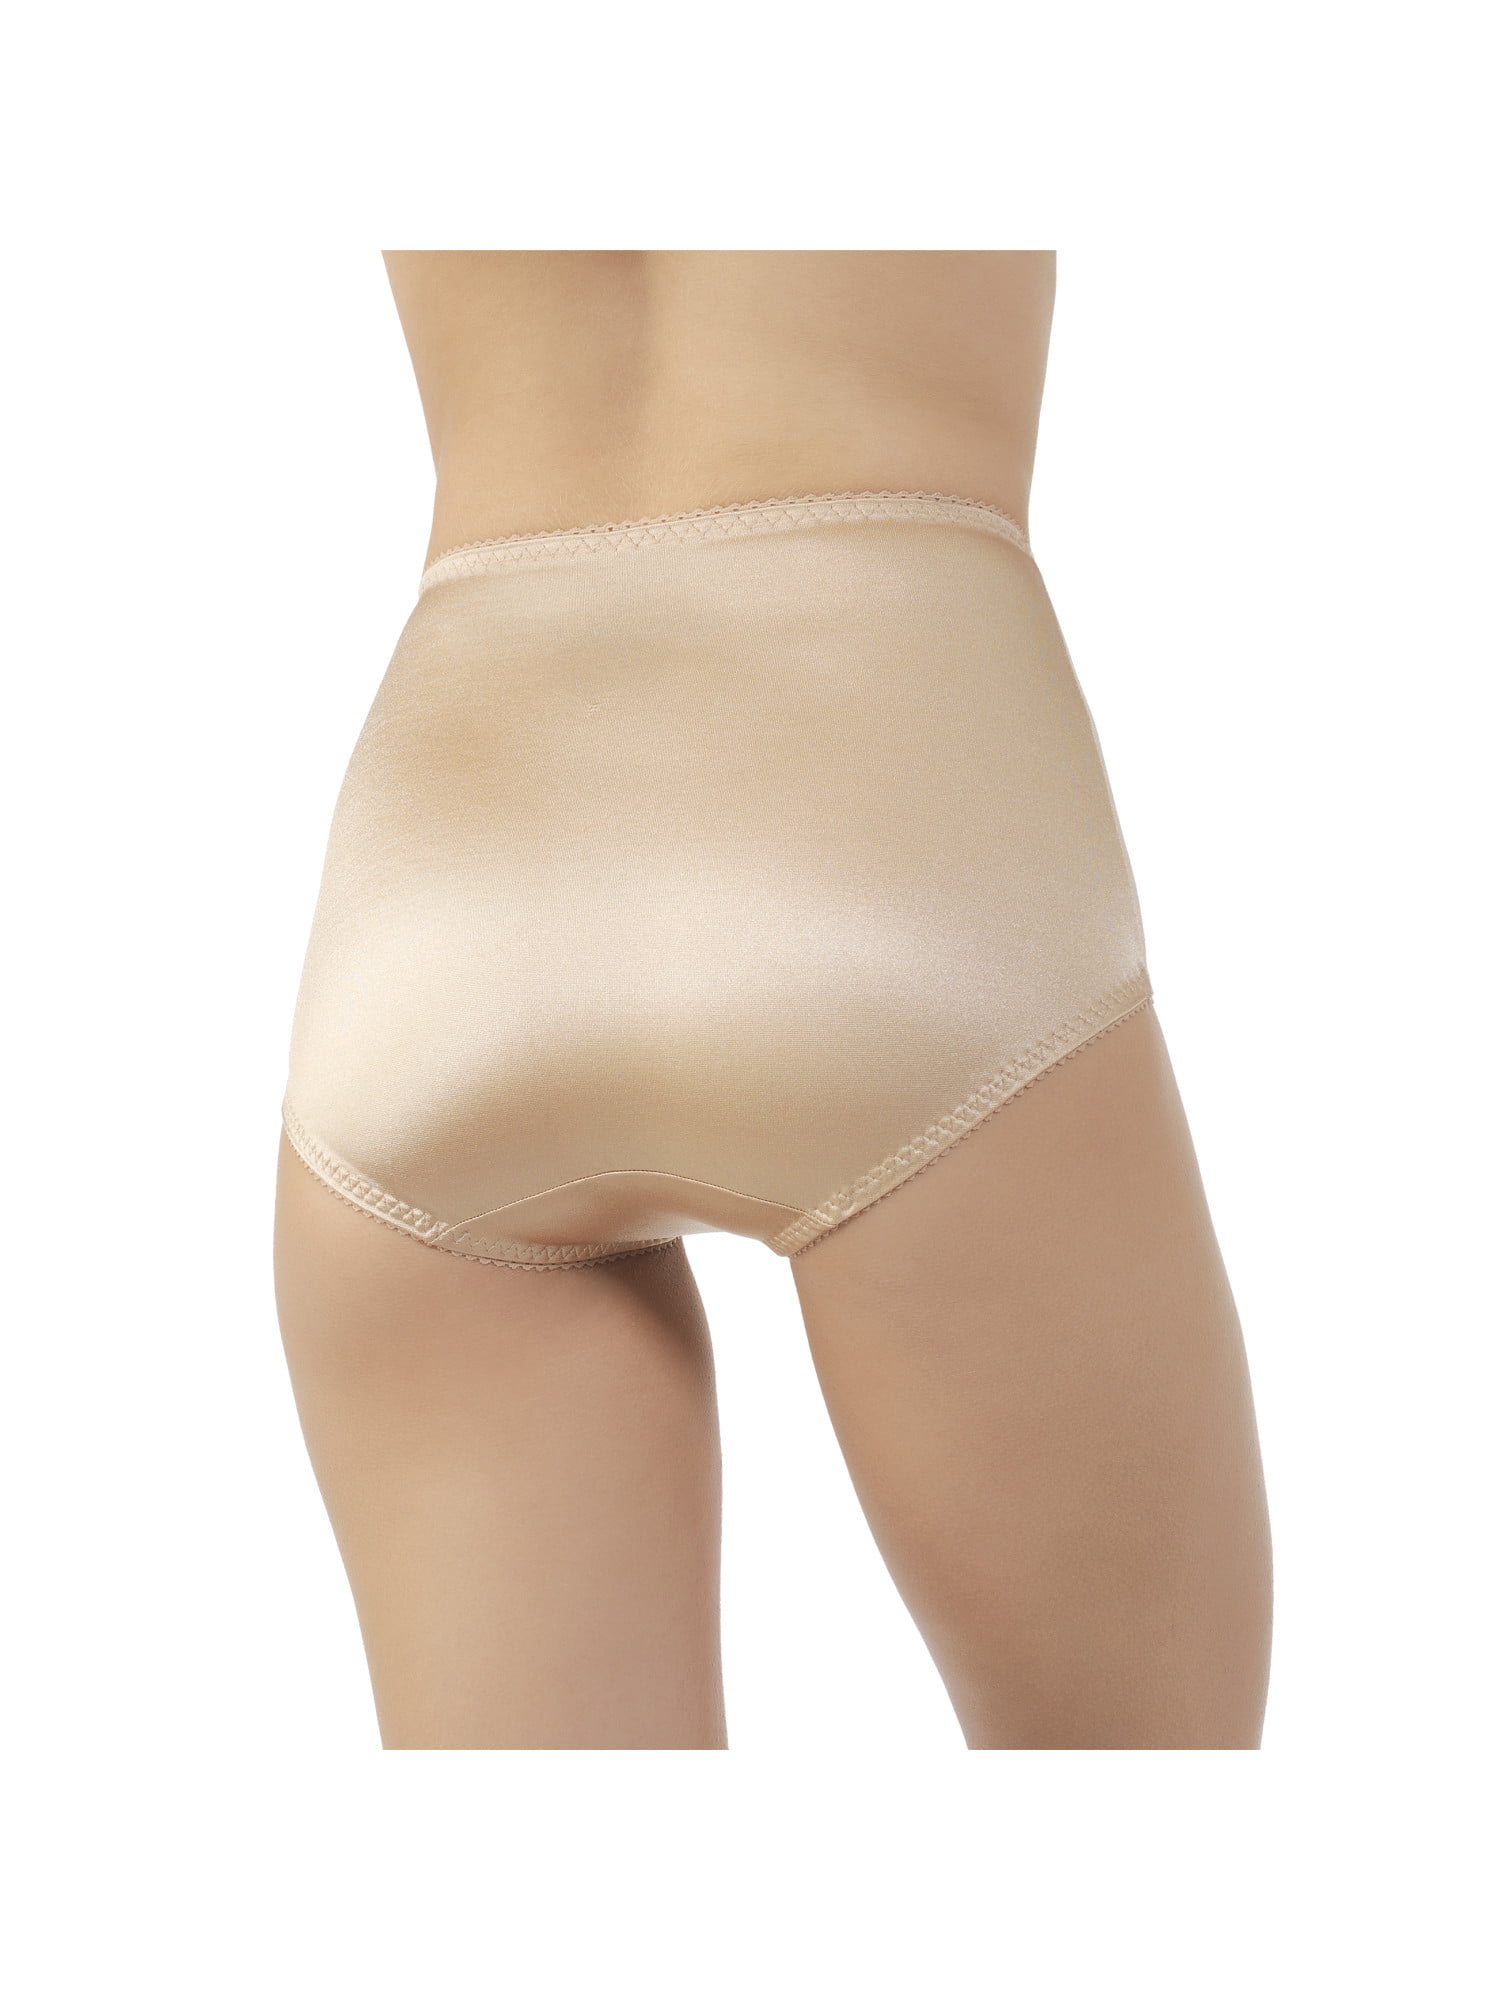 Buy Vassarette Women's Undershapers Light Control Brief Panties